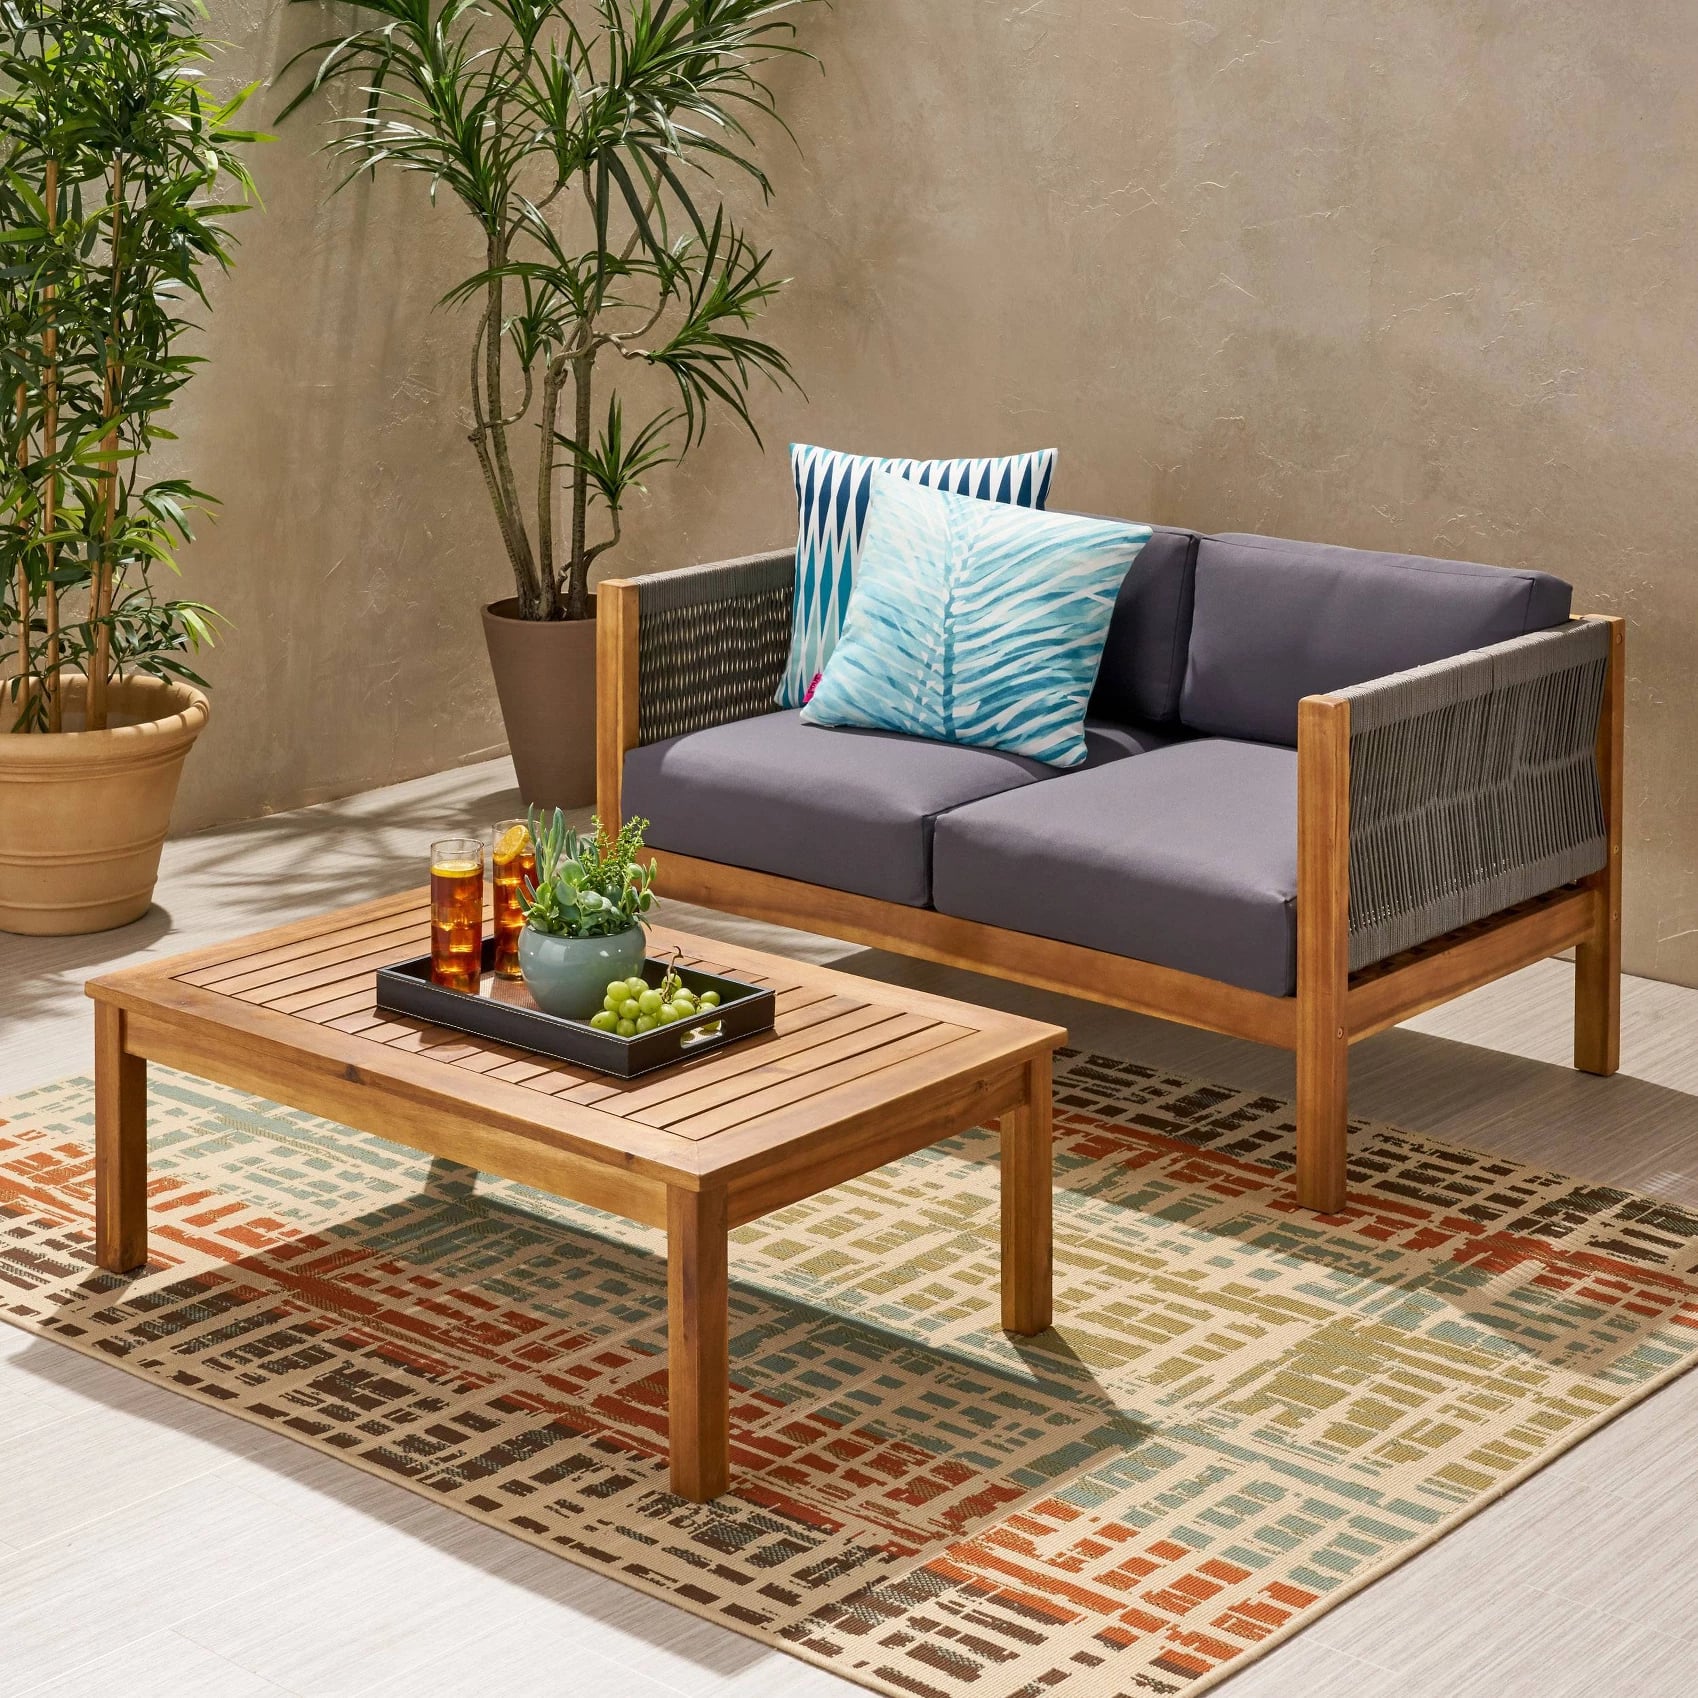 best outdoor furniture at target  2020  popsugar home